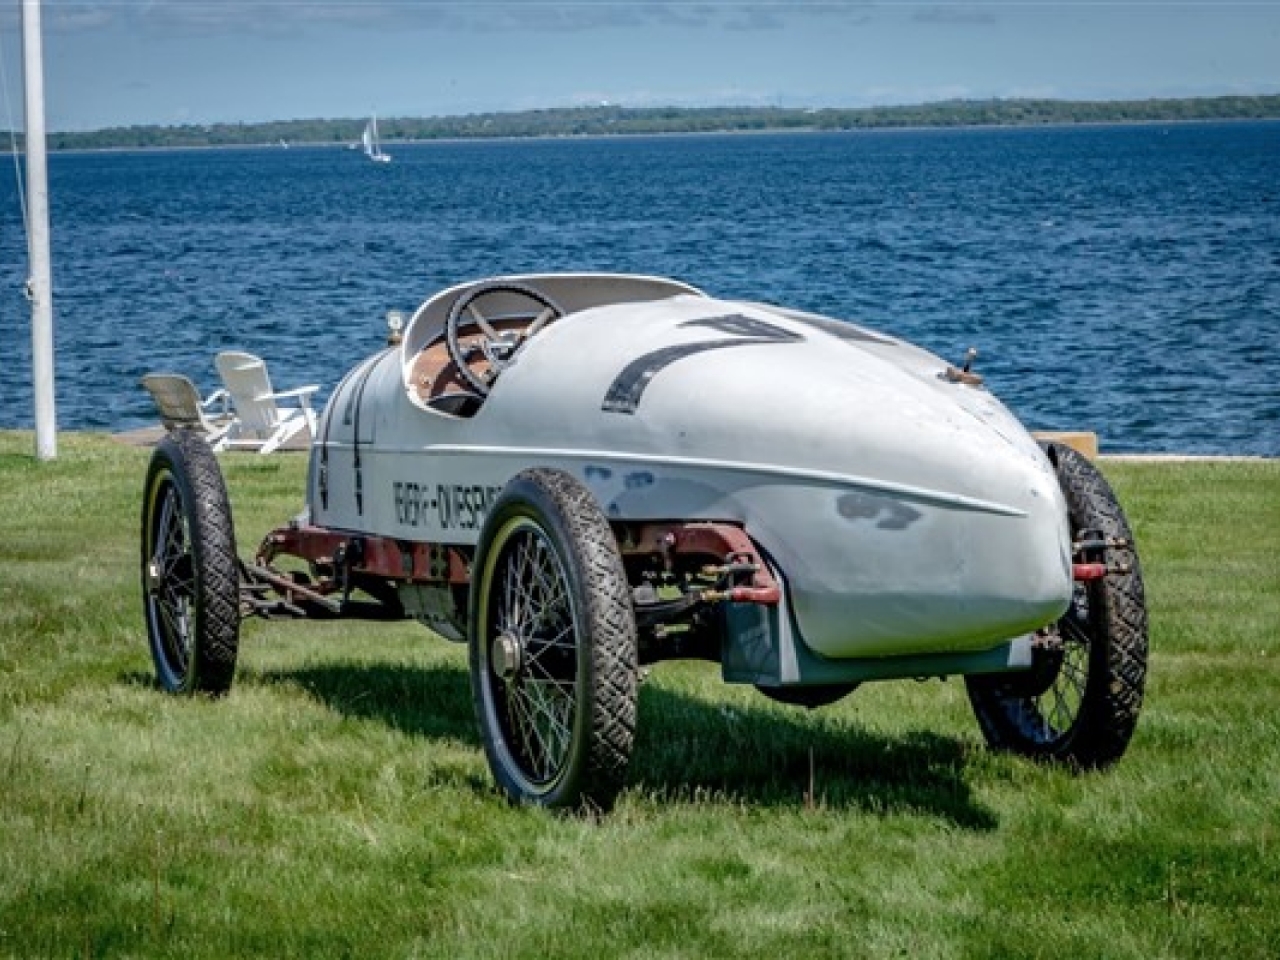 1918 ReVere Duesen­berg Racer